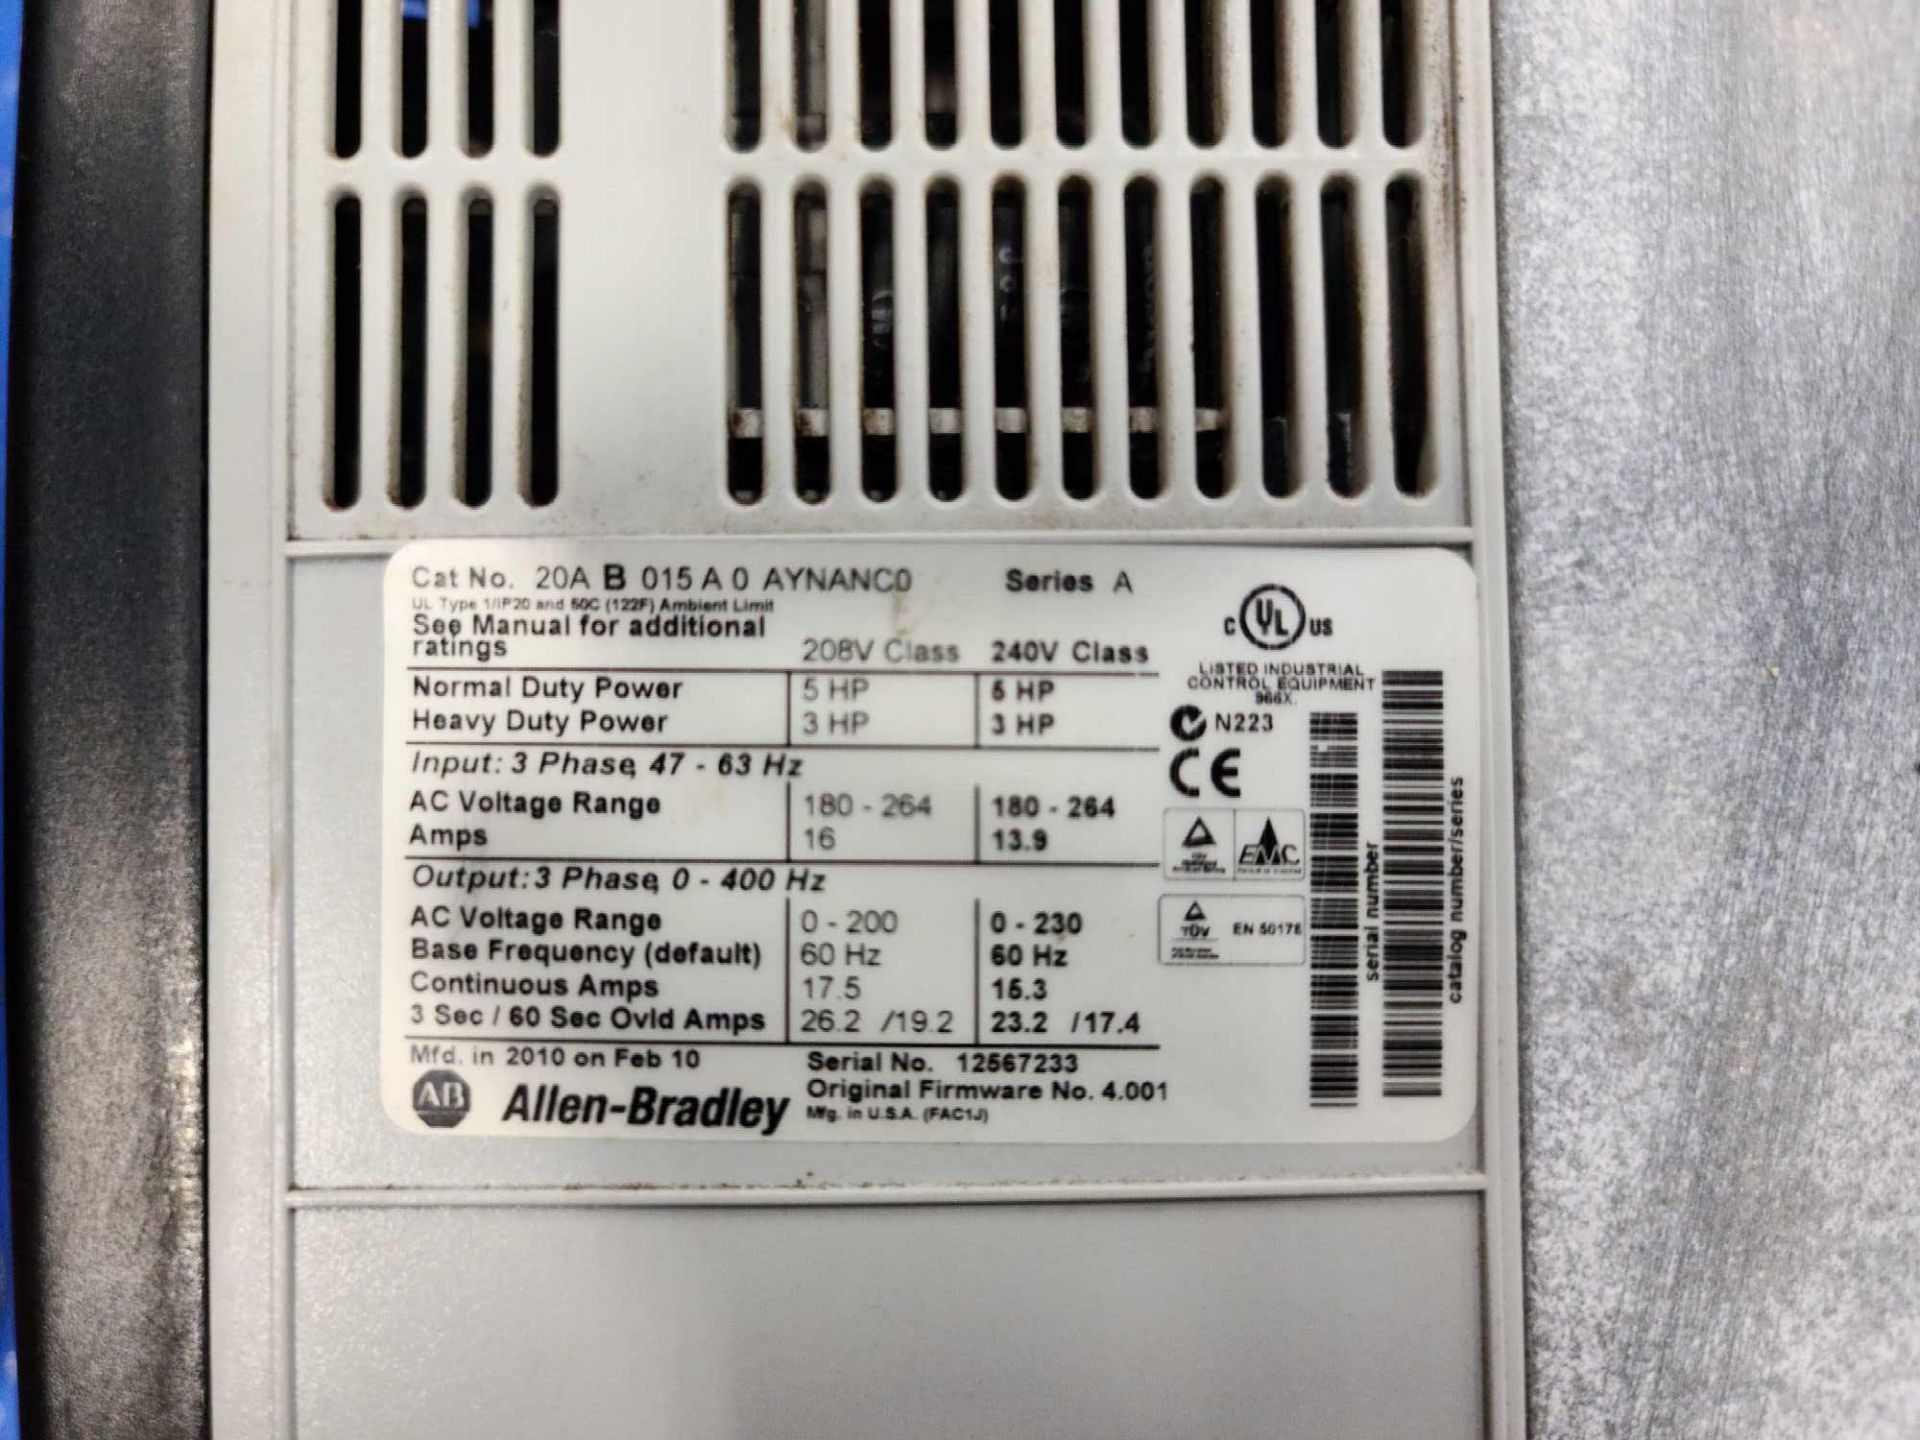 Allen-Bradley PowerFlex70 AC Motor Drive - Image 3 of 3